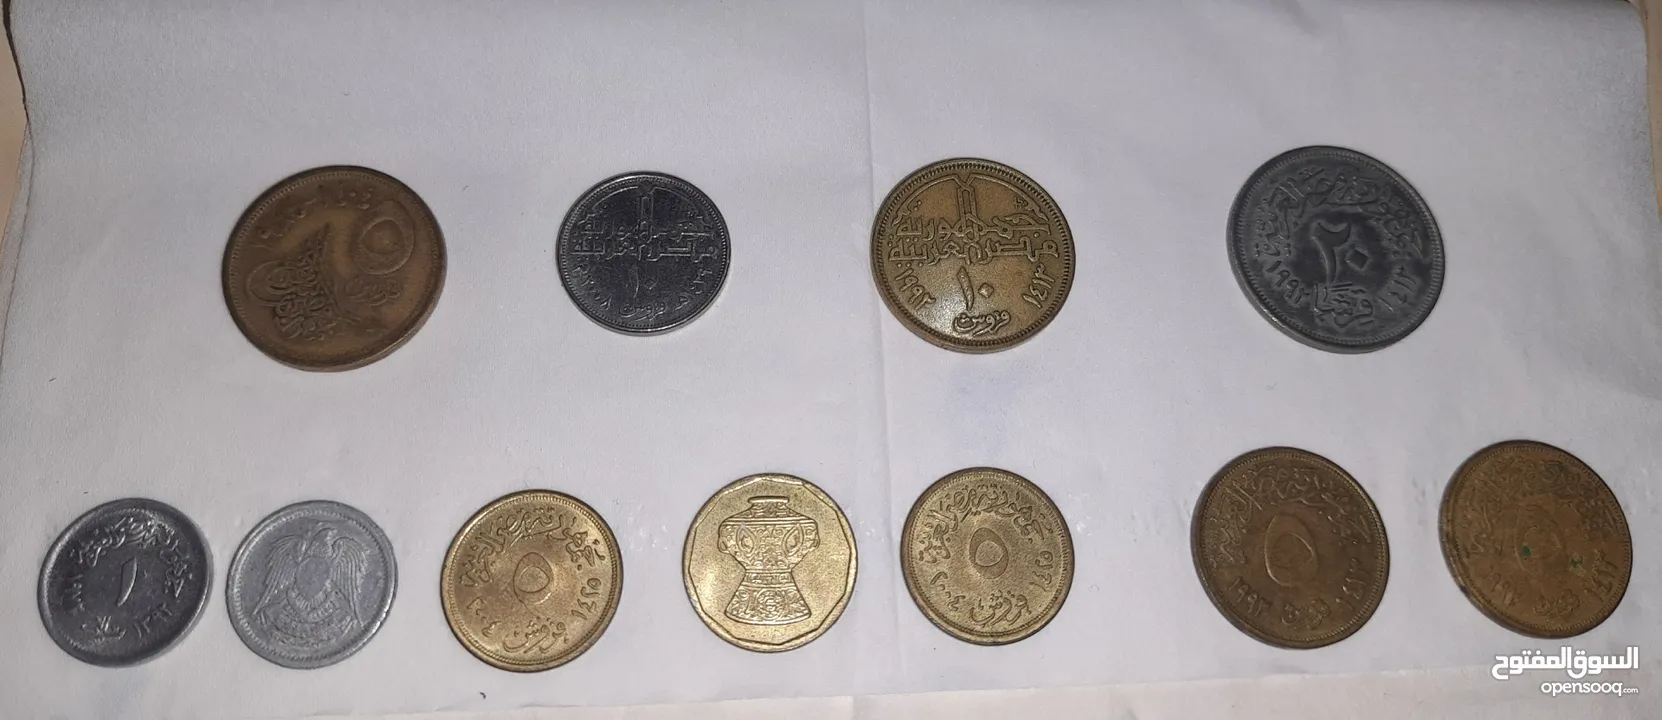 2 نيو بينس إليزابيث 1971 + مجموعه من العملات القديمه النقديه والورقيه بحاله ممتازه